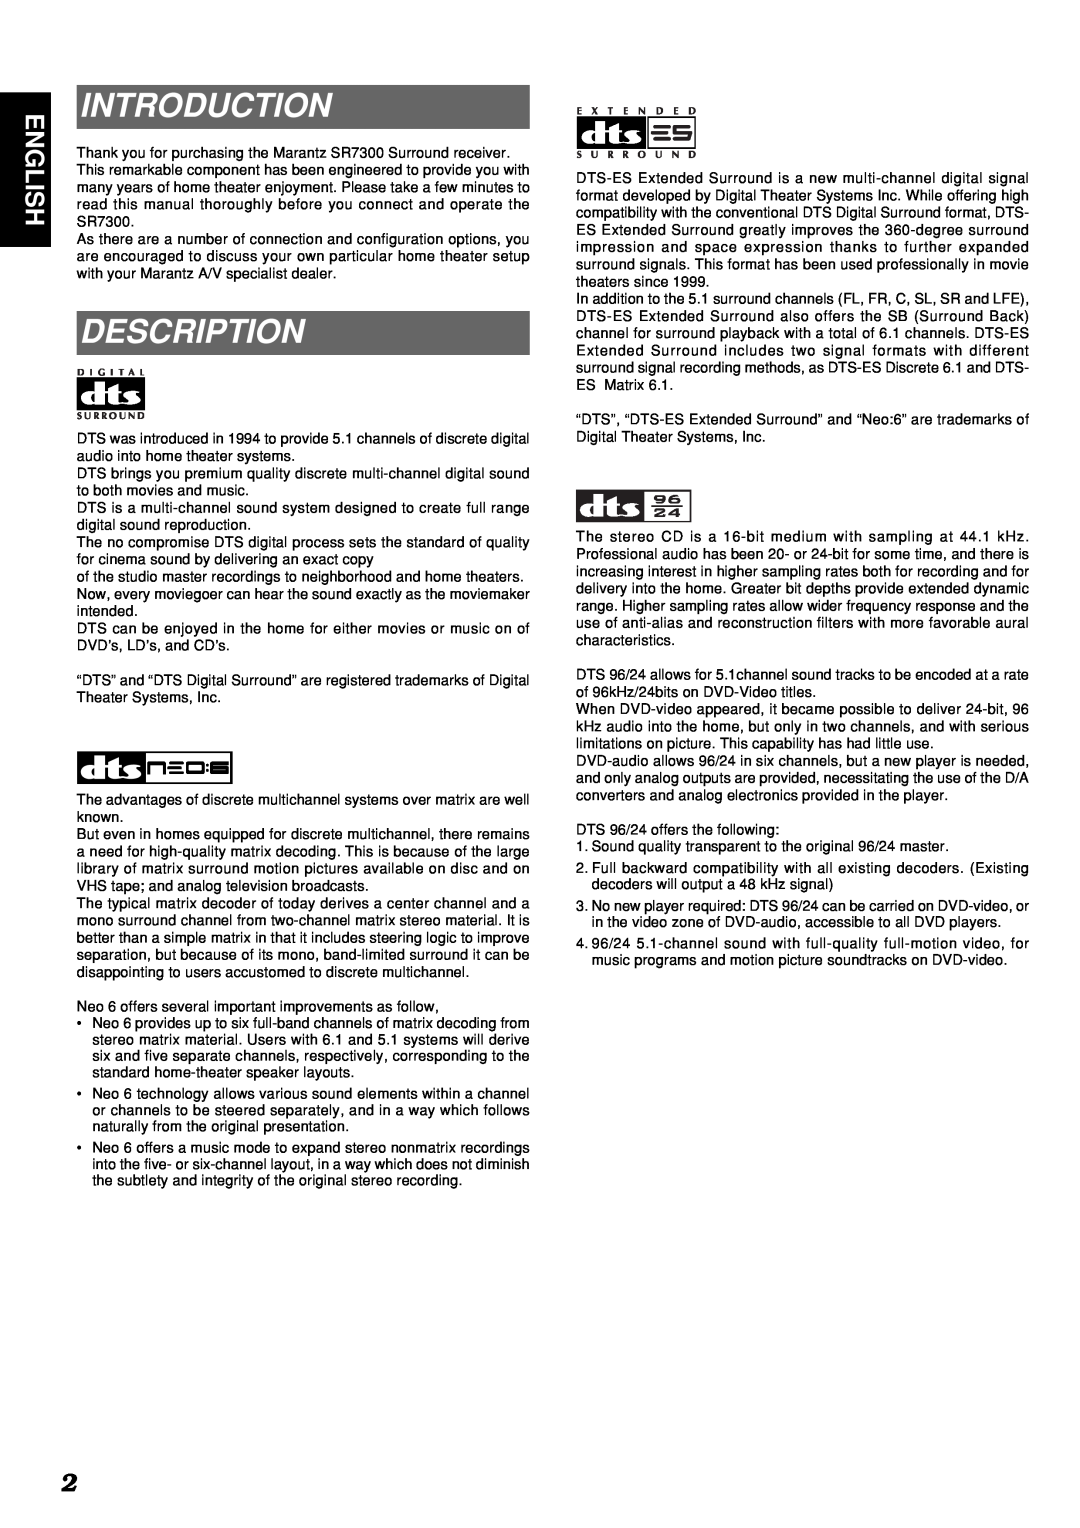 Marantz SR7300 manual Introduction, Description, English 